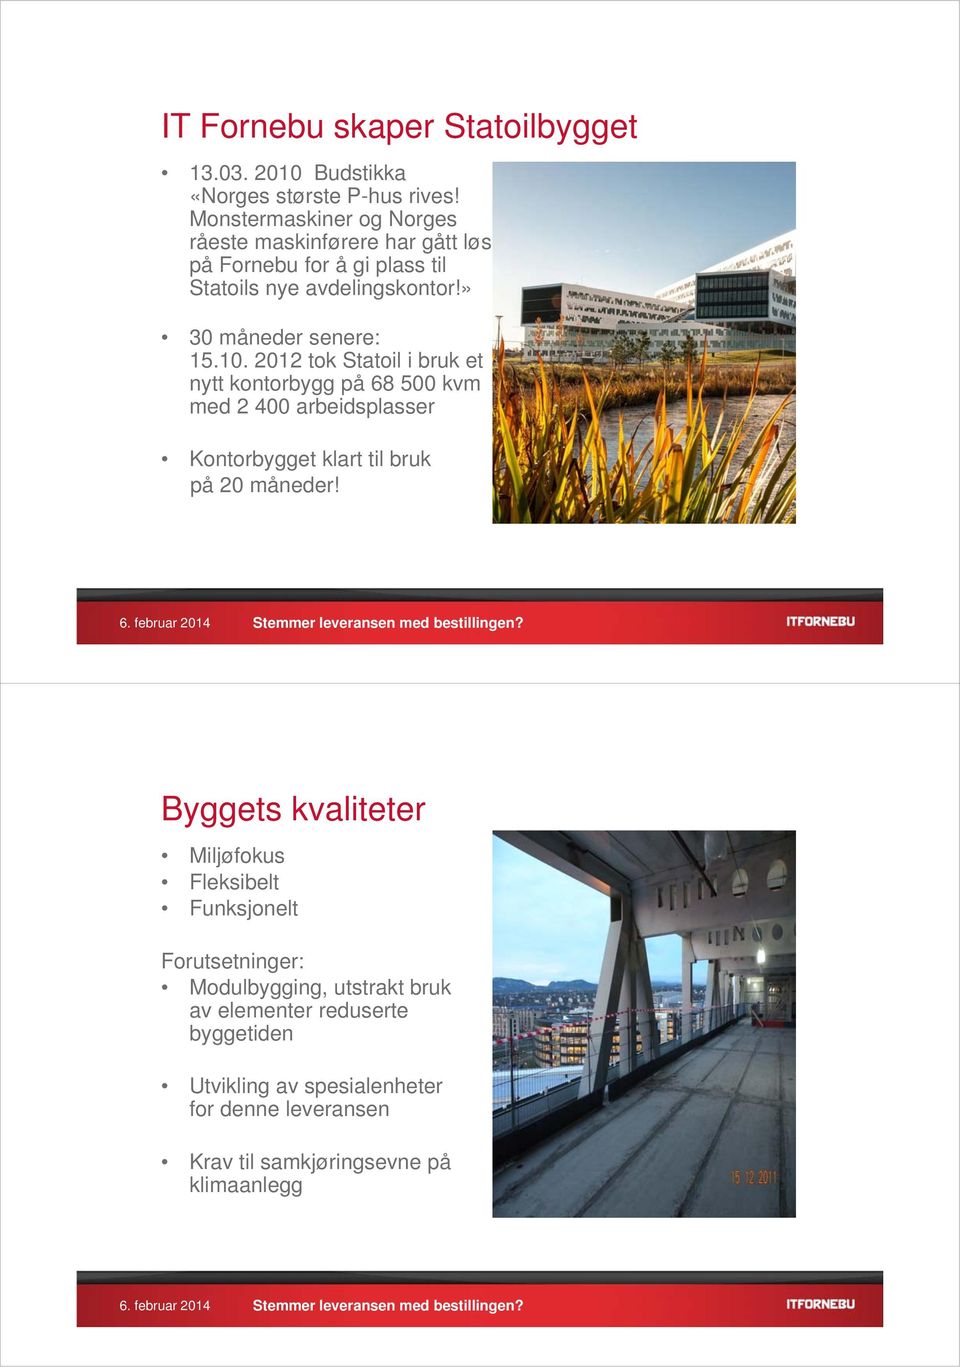 10. 2012 tok Statoil i bruk et nytt kontorbygg på 68 500 kvm med 2 400 arbeidsplasser Kontorbygget klart til bruk på 20 måneder!